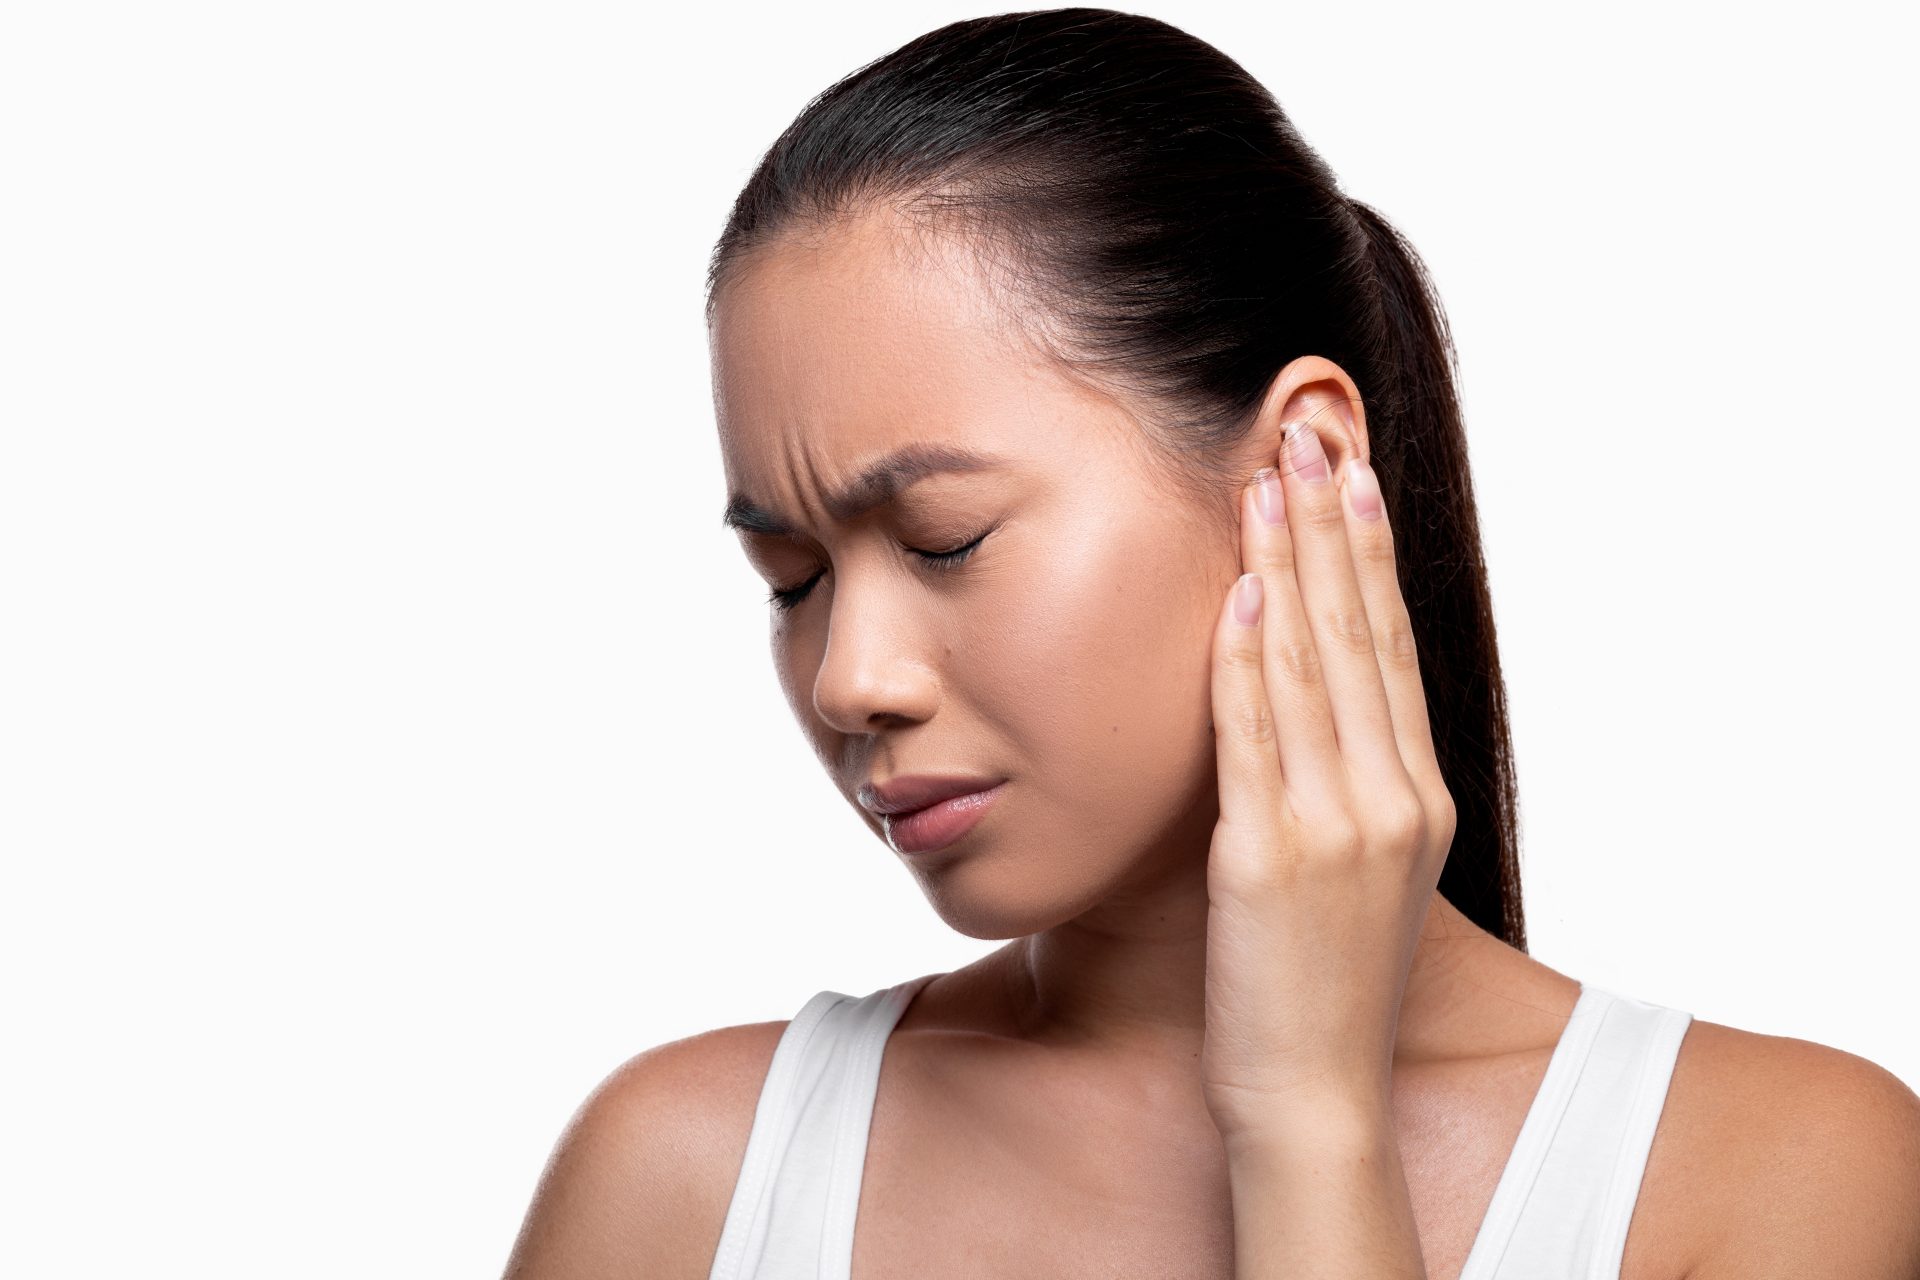 Frau mit Tinnitus hält sich schmerzerfüllt ihr Ohr